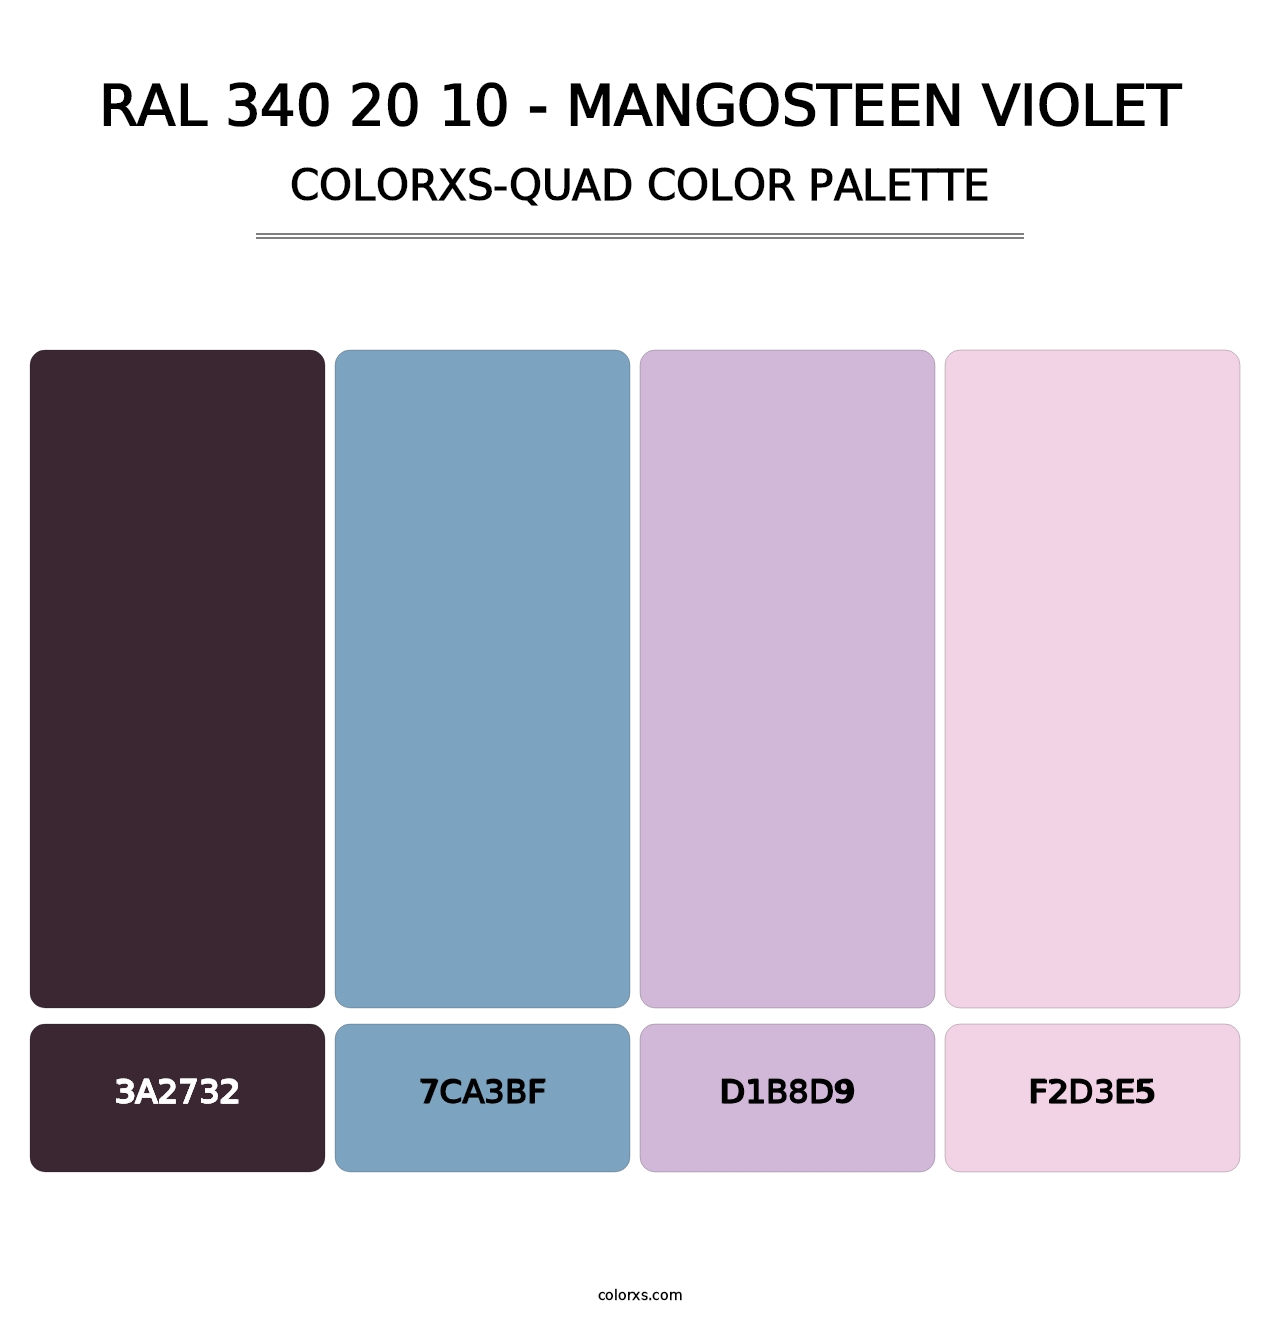 RAL 340 20 10 - Mangosteen Violet - Colorxs Quad Palette